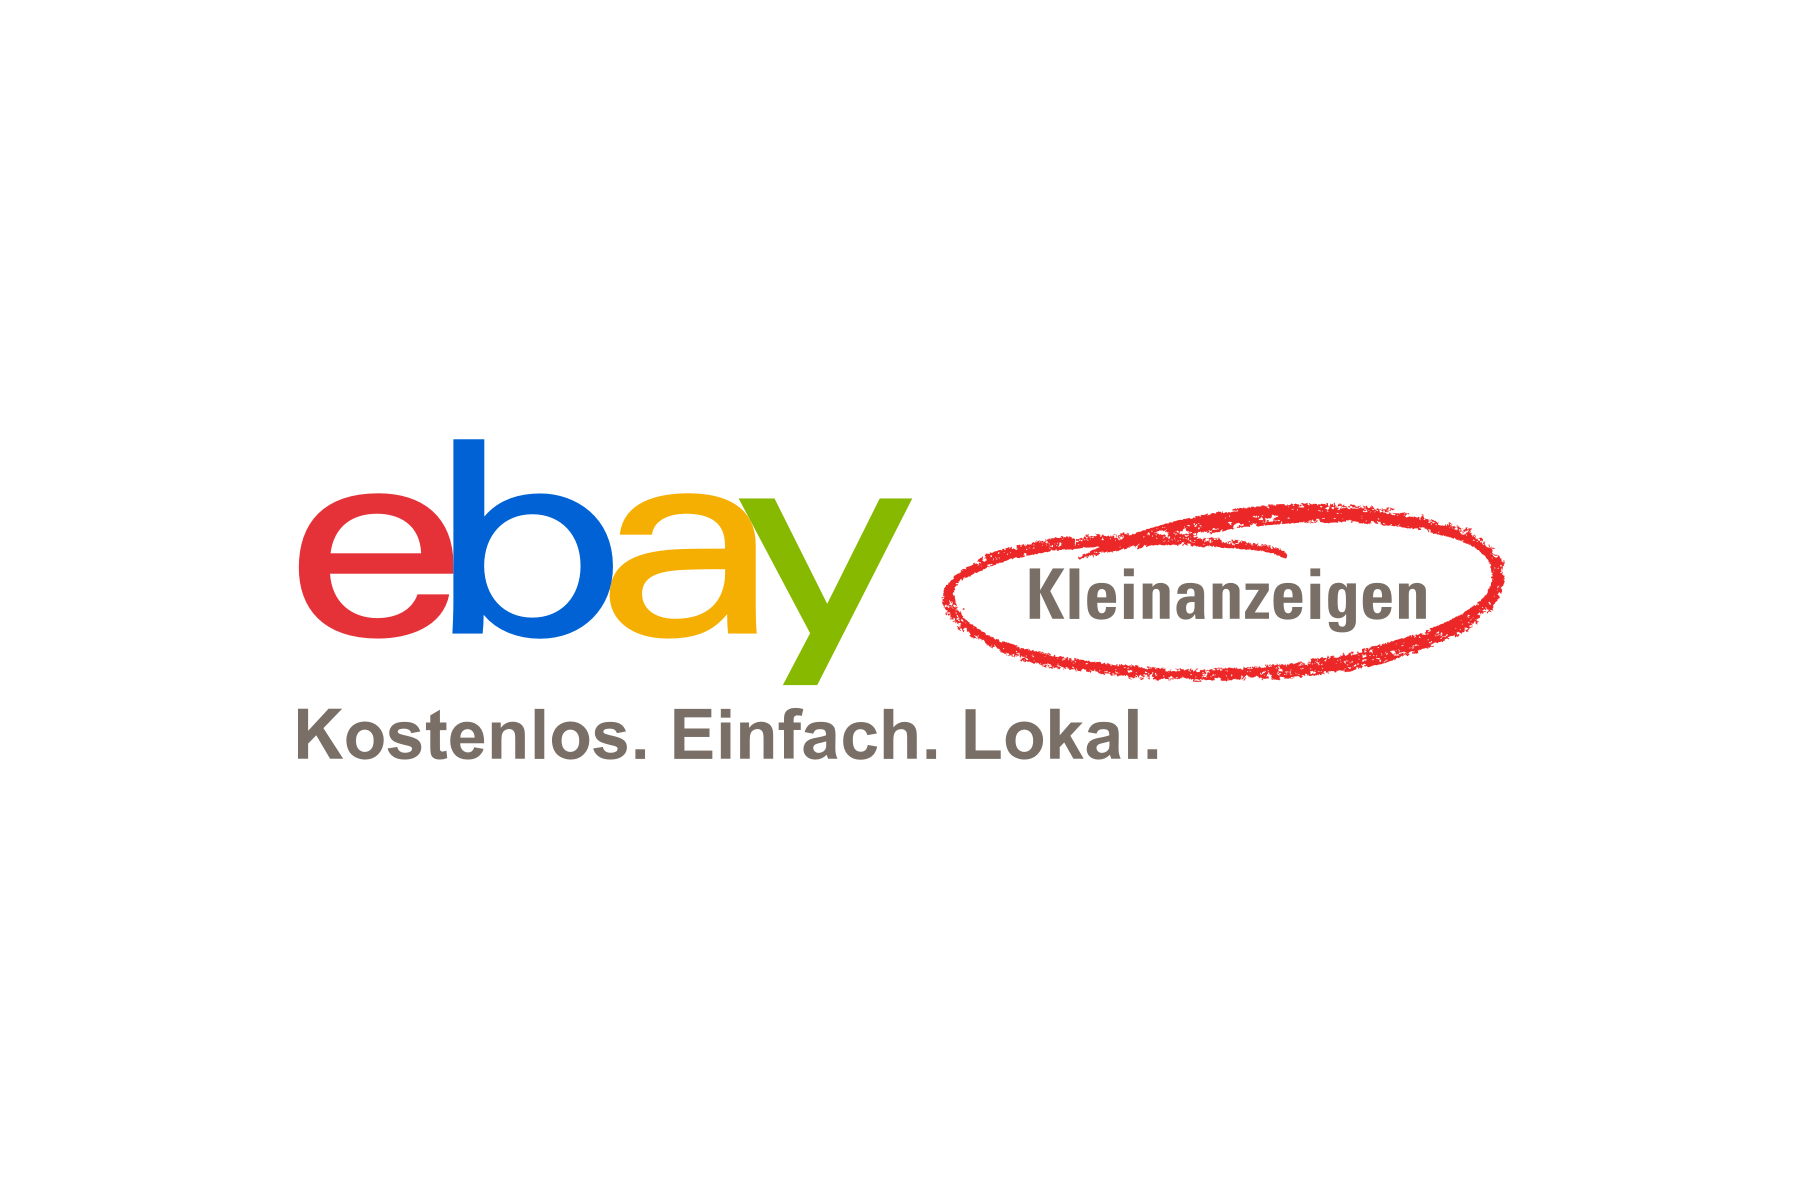 Шукаємо необхідні речі за помірними цінами або безкоштово на eBay Kleinanzeigen